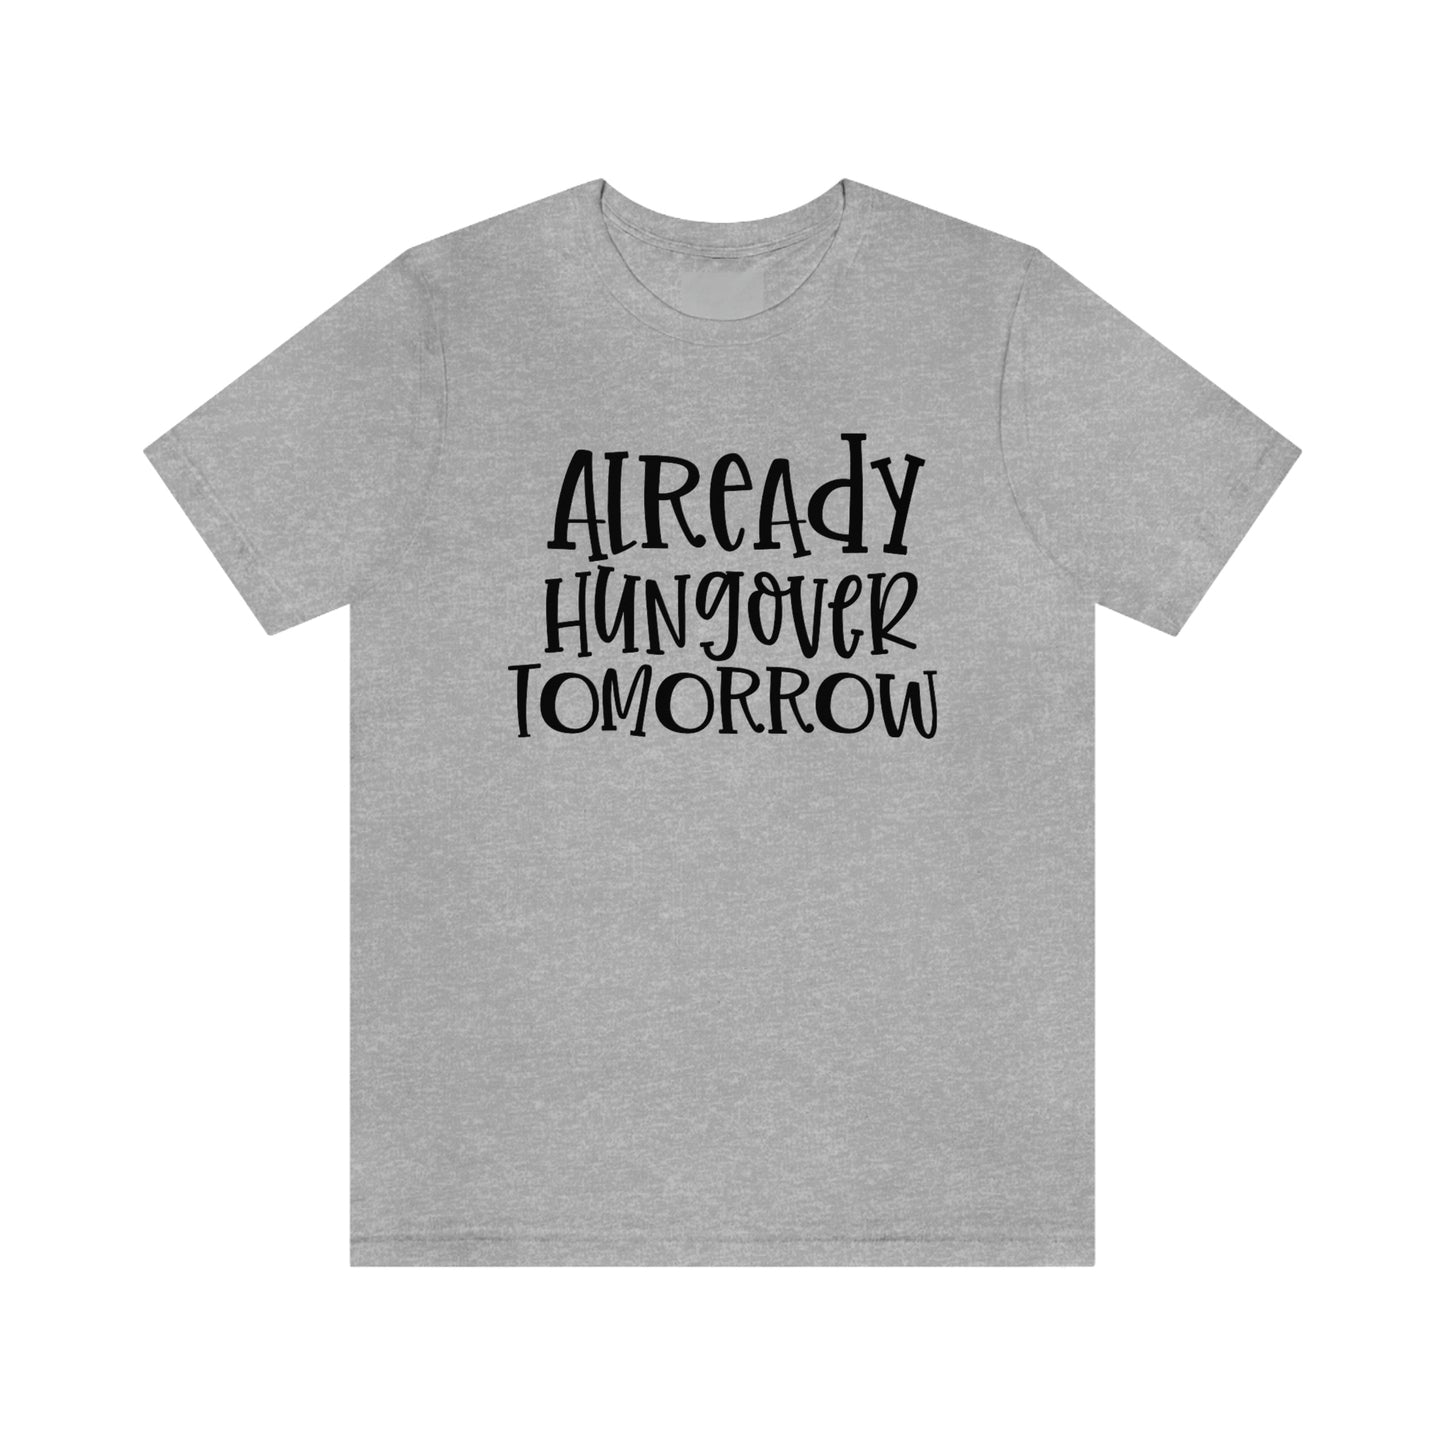 Already Hungover Tomorrow Shirt